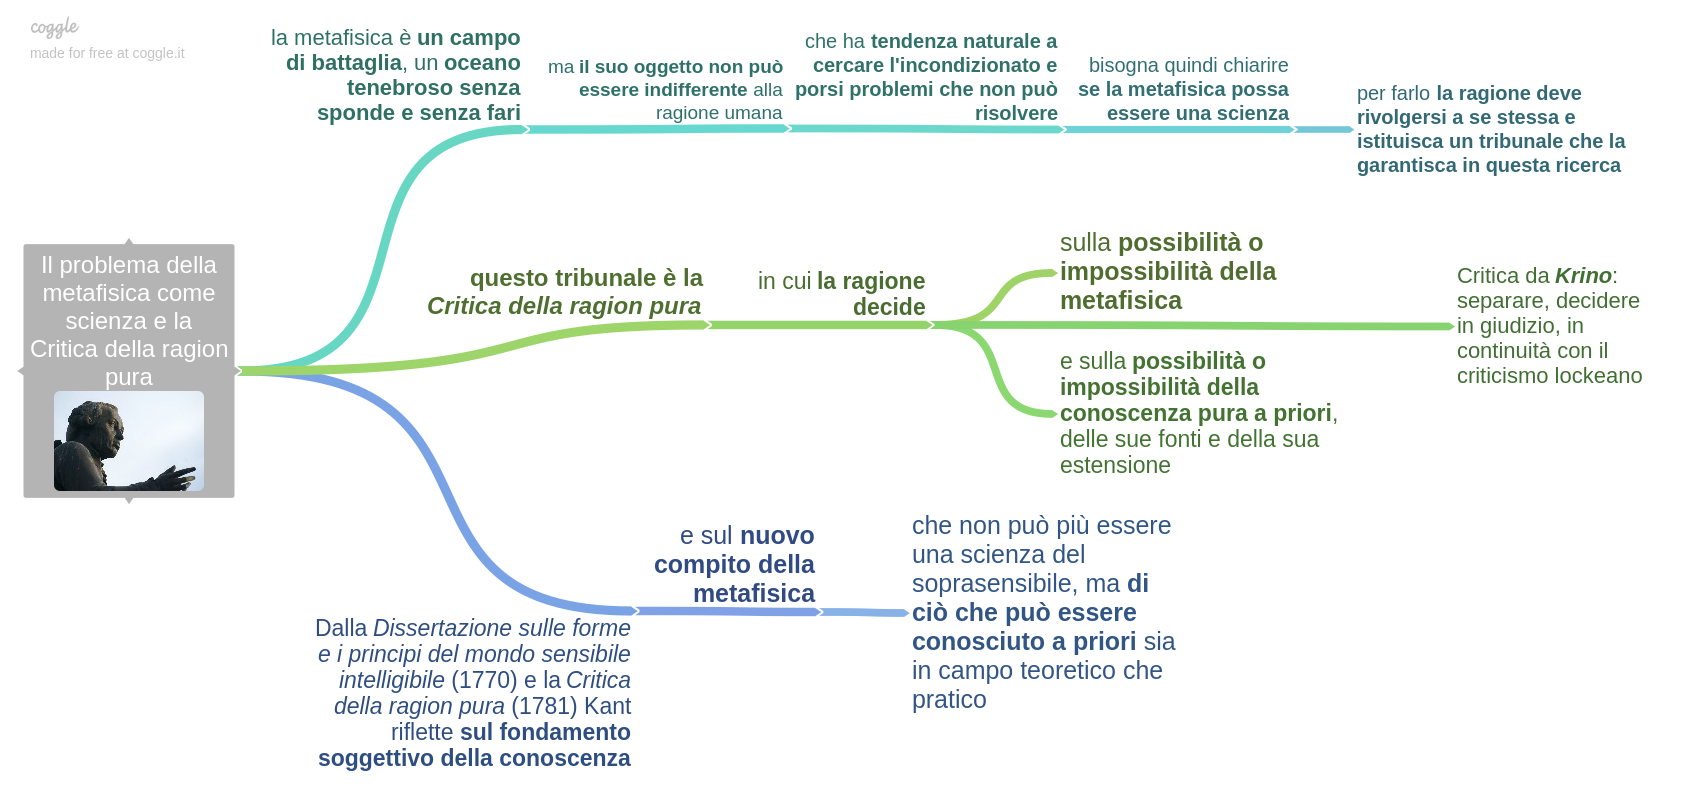 Il_problema_della_metafisica_come_scienza_e_la_Critica_della_ragion_pura-2.png